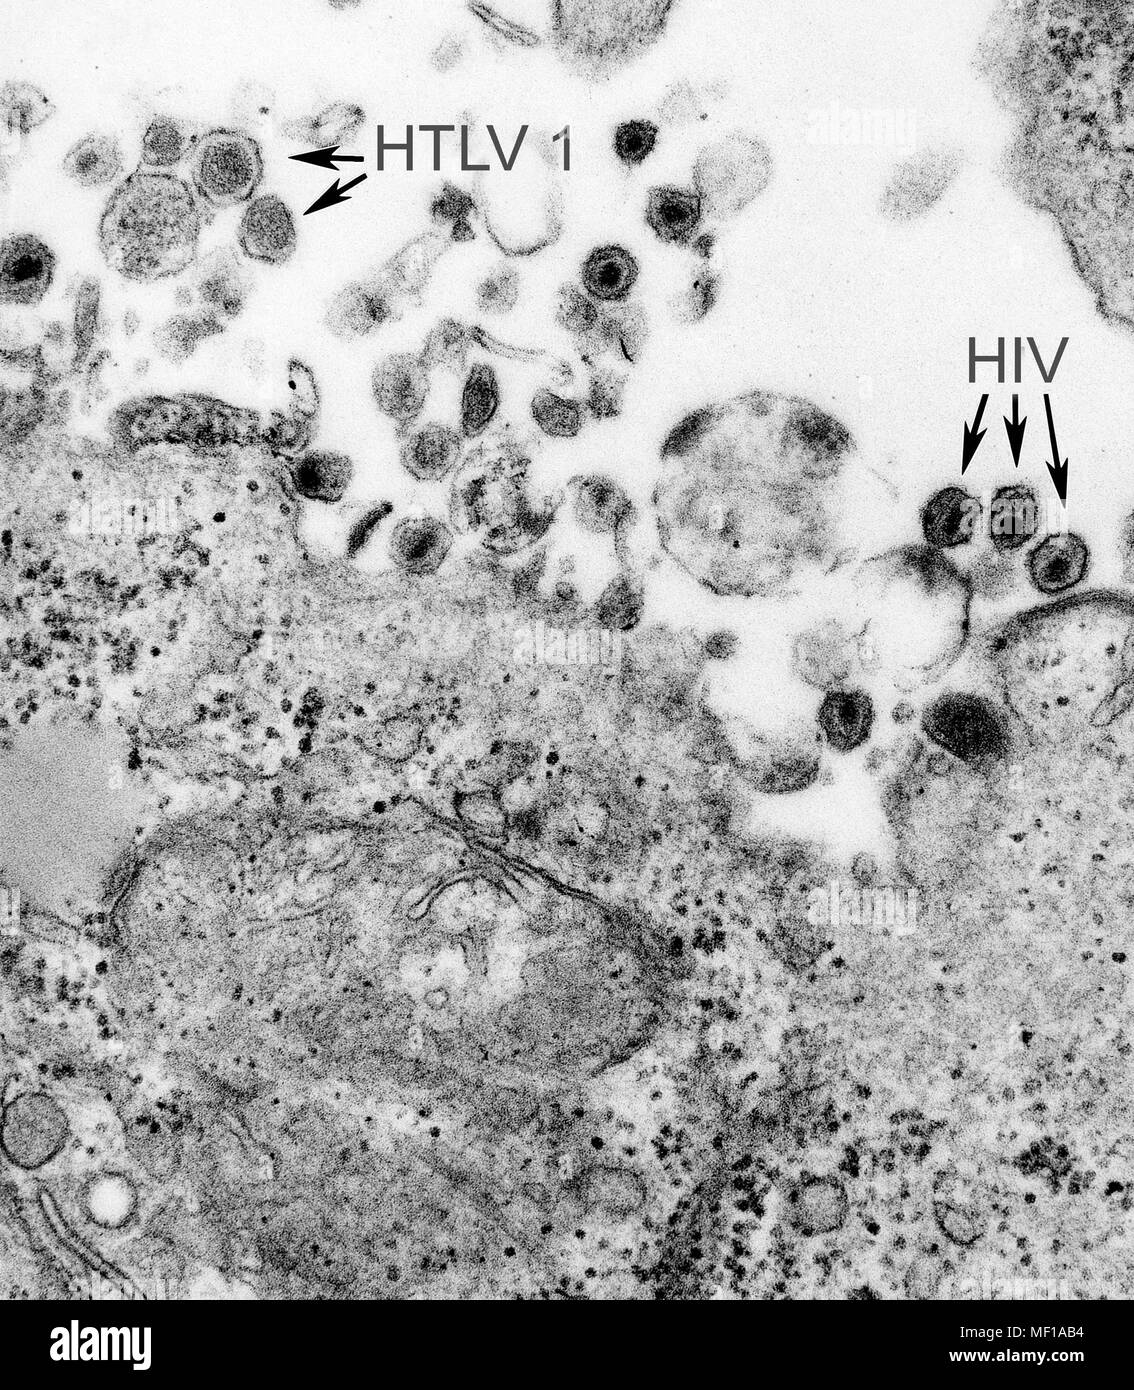 La presenza di entrambi i di leucemia a cellule T umana di tipo 1 (virus HTLV-1) e il virus di immunodeficienza umana (HIV) ha rivelato nella trasmissione microscopiche di elettroni (TEM) immagine, 1980. Immagine cortesia di centri per il controllo delle malattie (CDC) / Cynthia Goldsmith. () Foto Stock